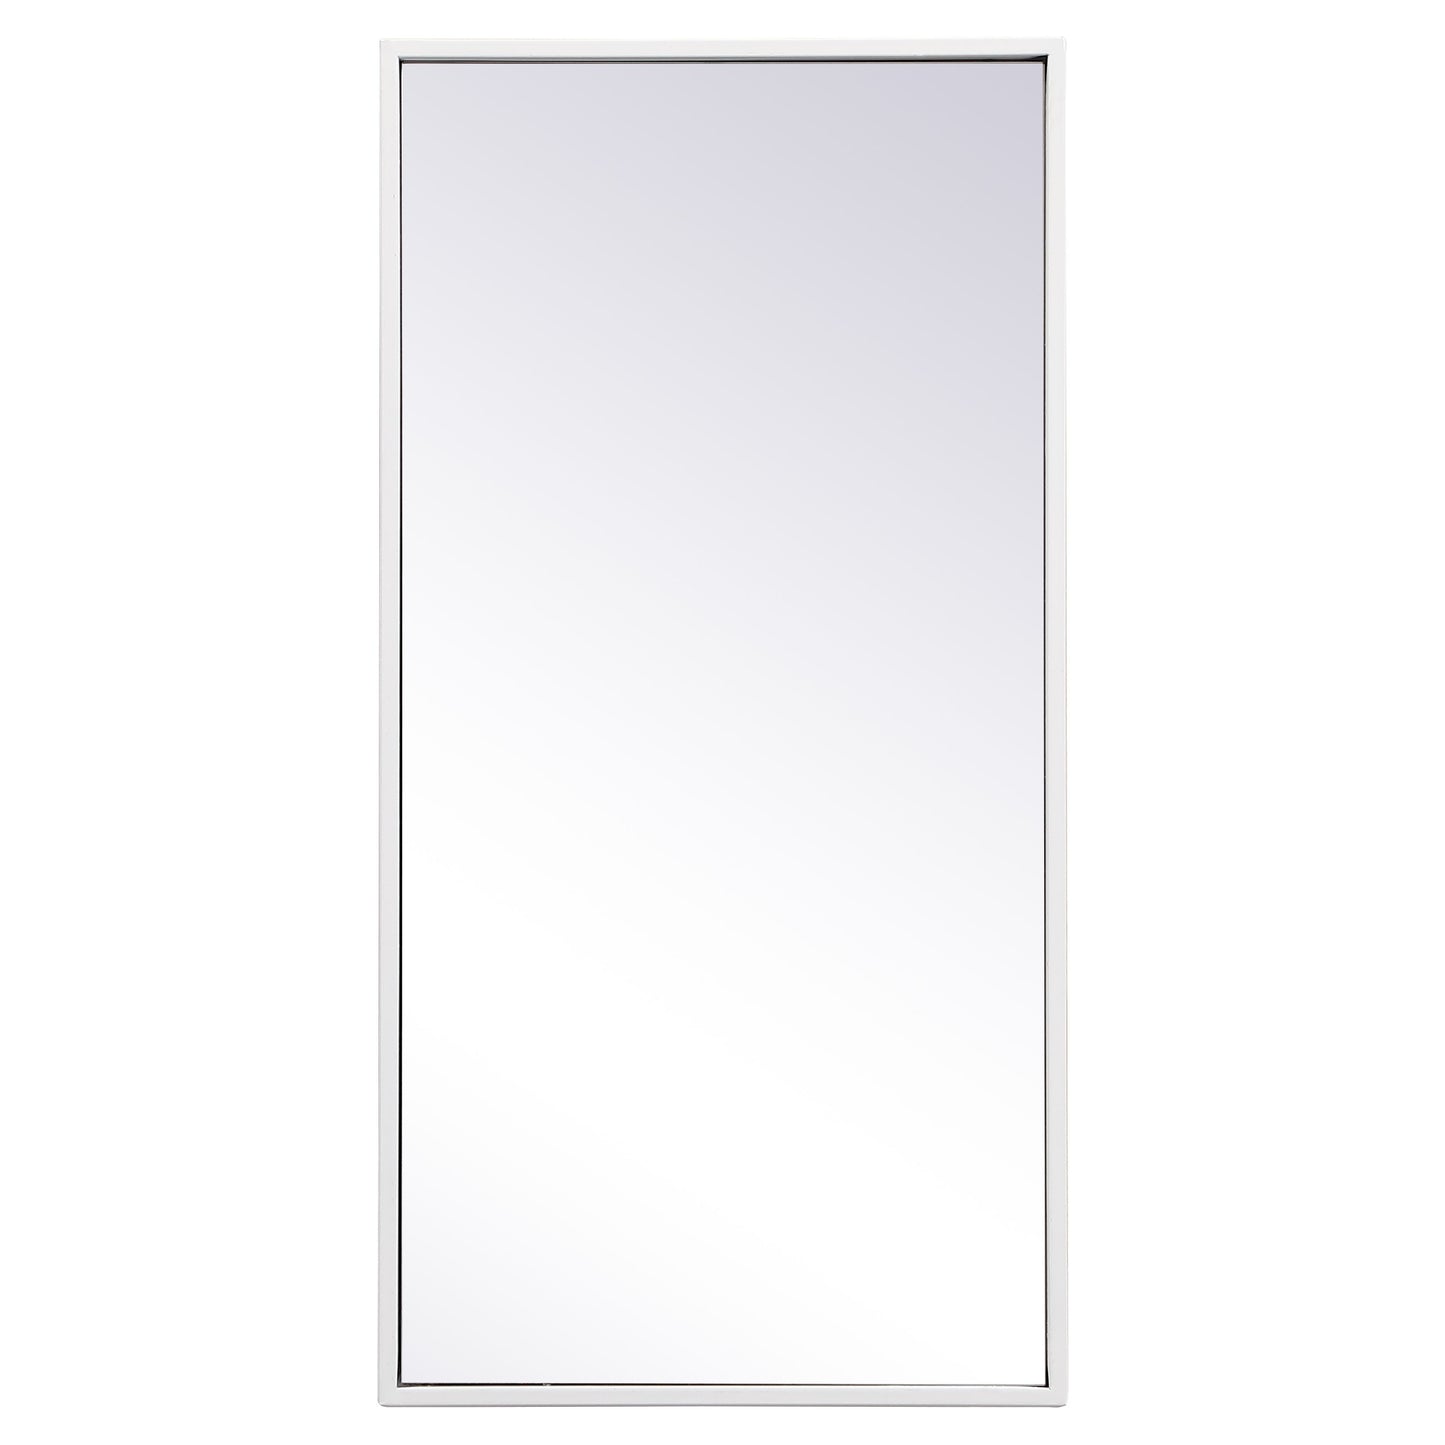 MR41428WH Monet 28" x 14" Metal Framed Rectangular Mirror in White